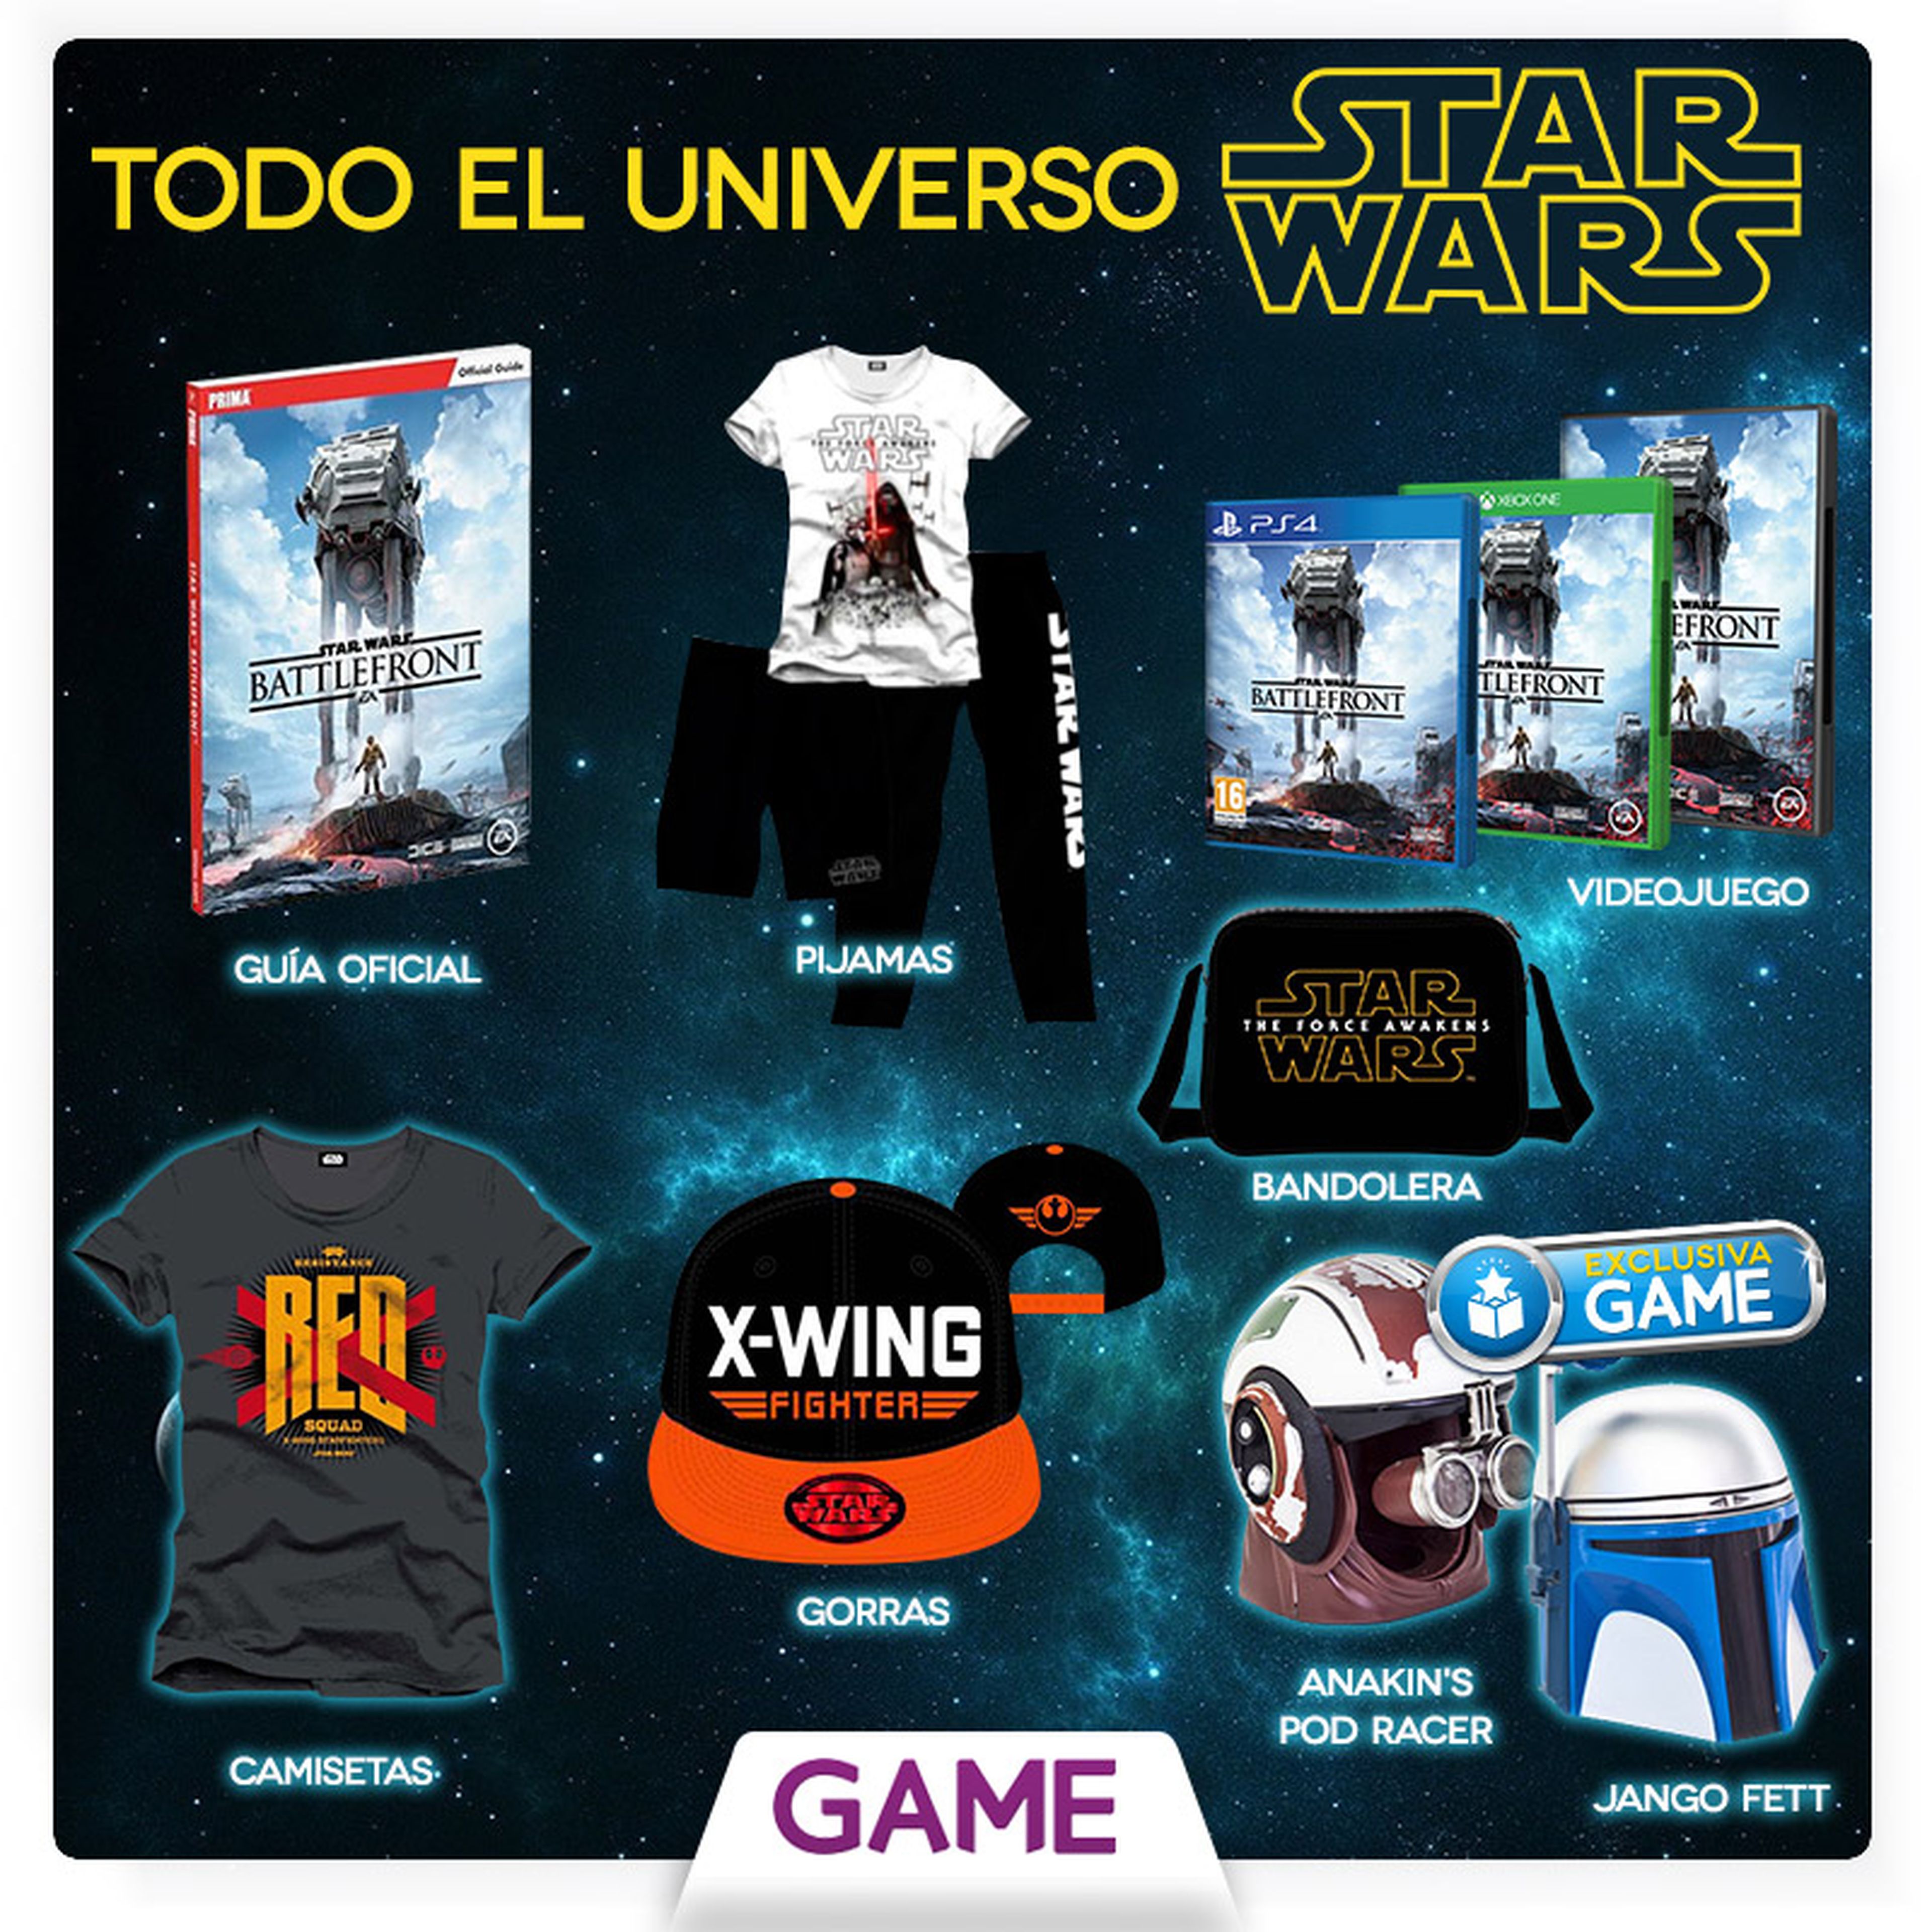 Star Wars Battlefront, productos del juego en GAME